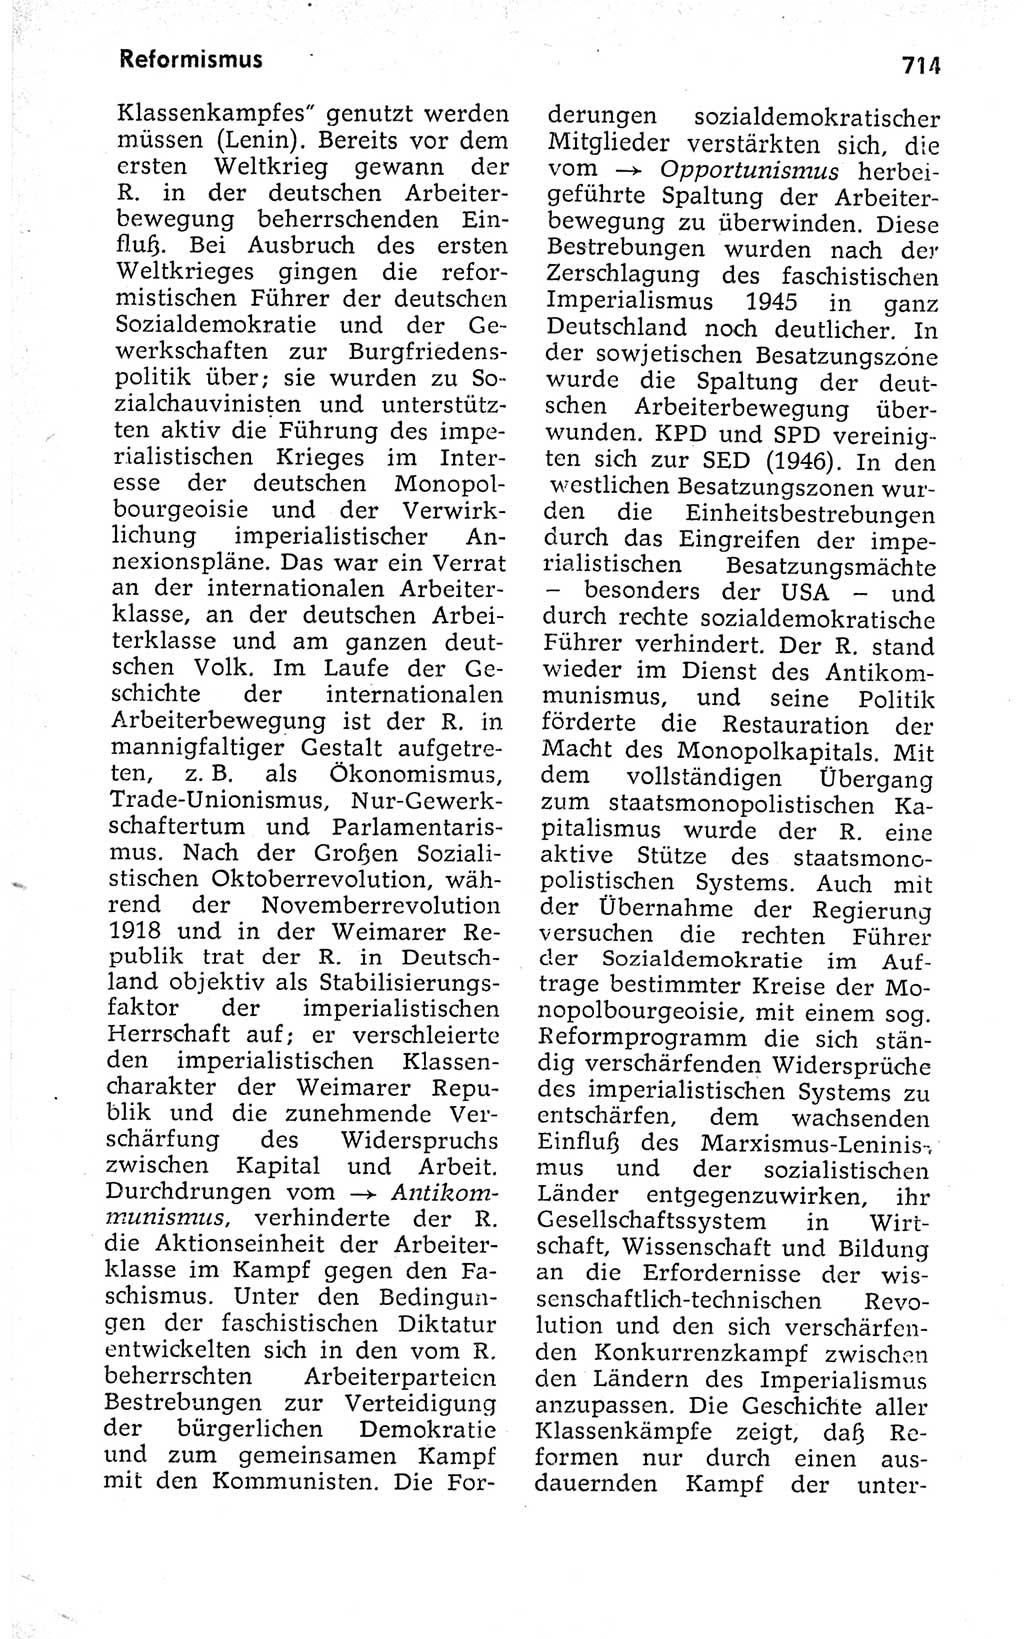 Kleines politisches Wörterbuch [Deutsche Demokratische Republik (DDR)] 1973, Seite 714 (Kl. pol. Wb. DDR 1973, S. 714)